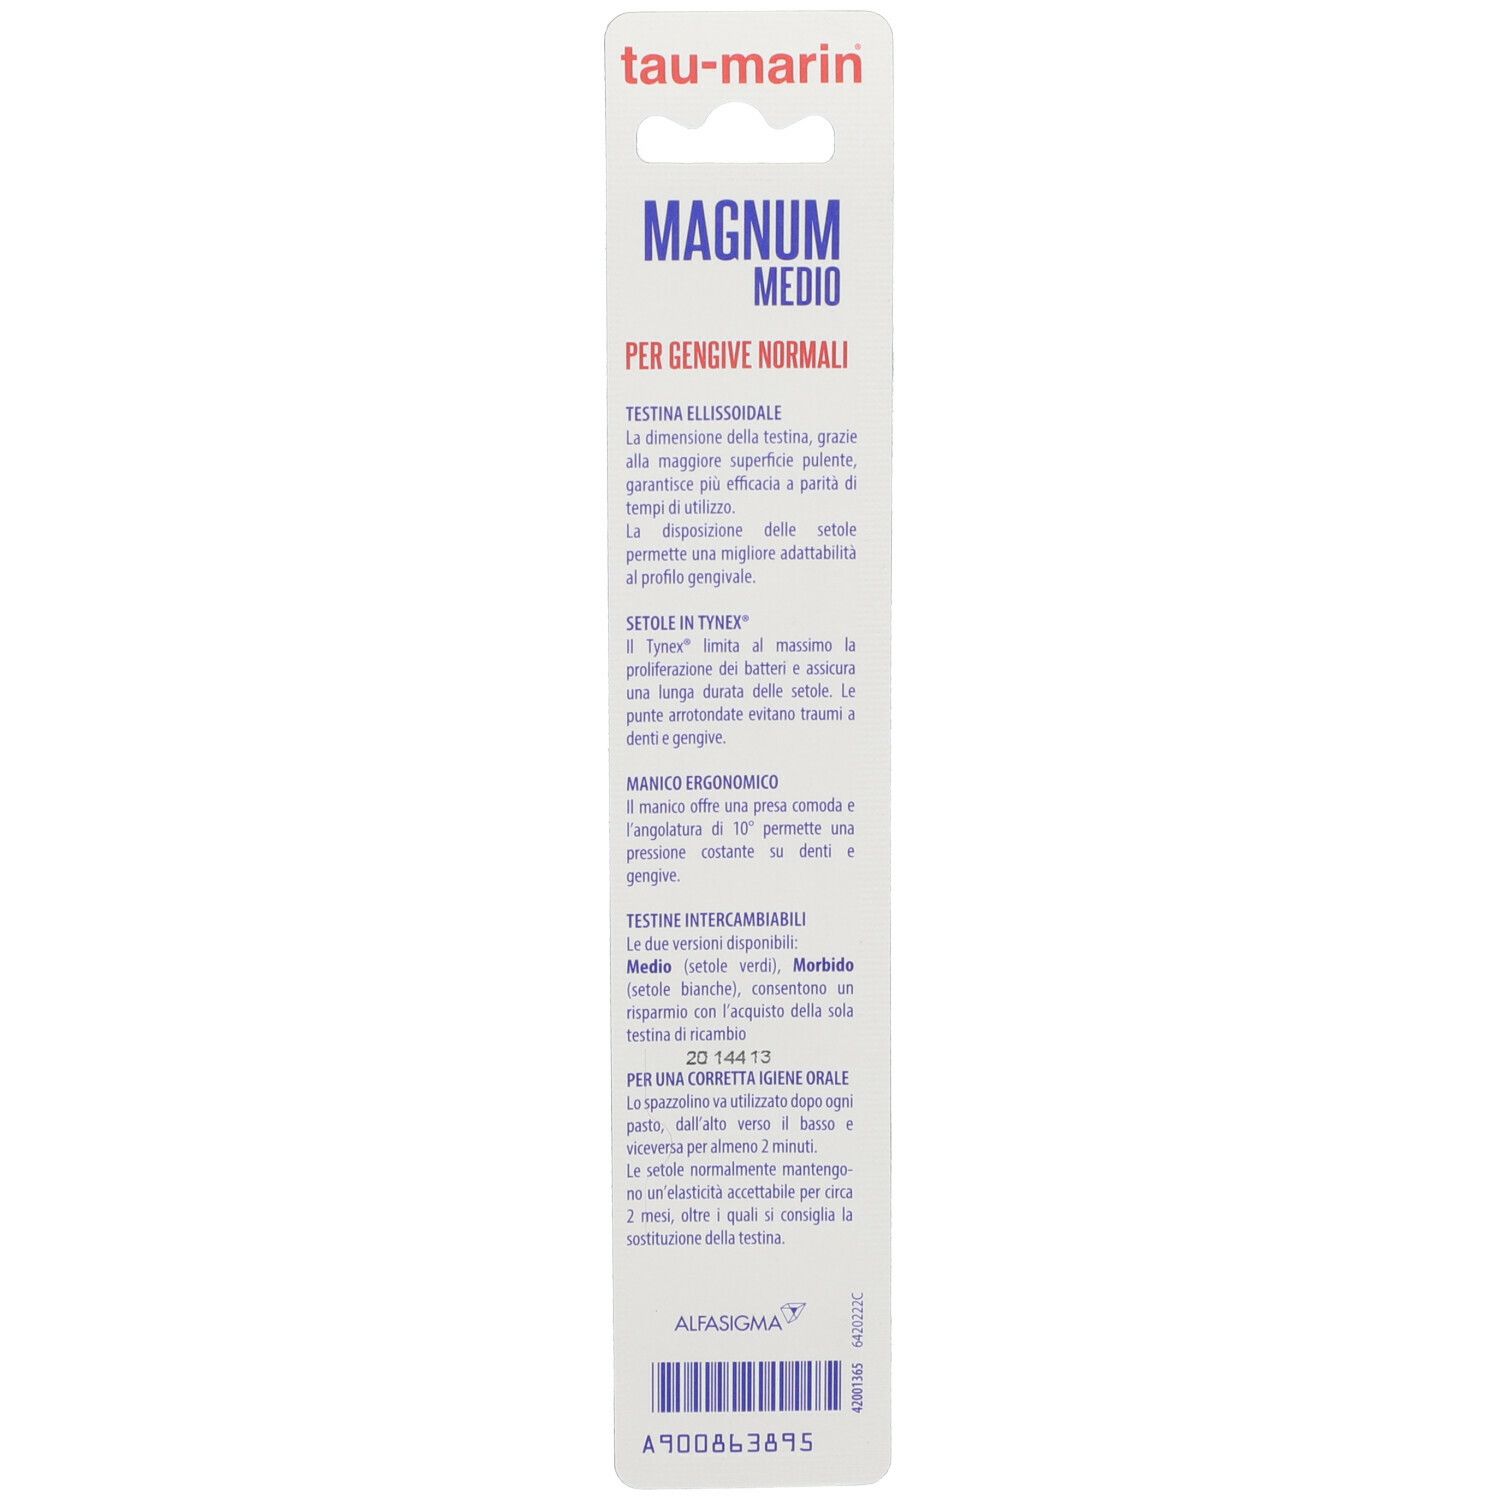 Tau-marin Magnum Medium